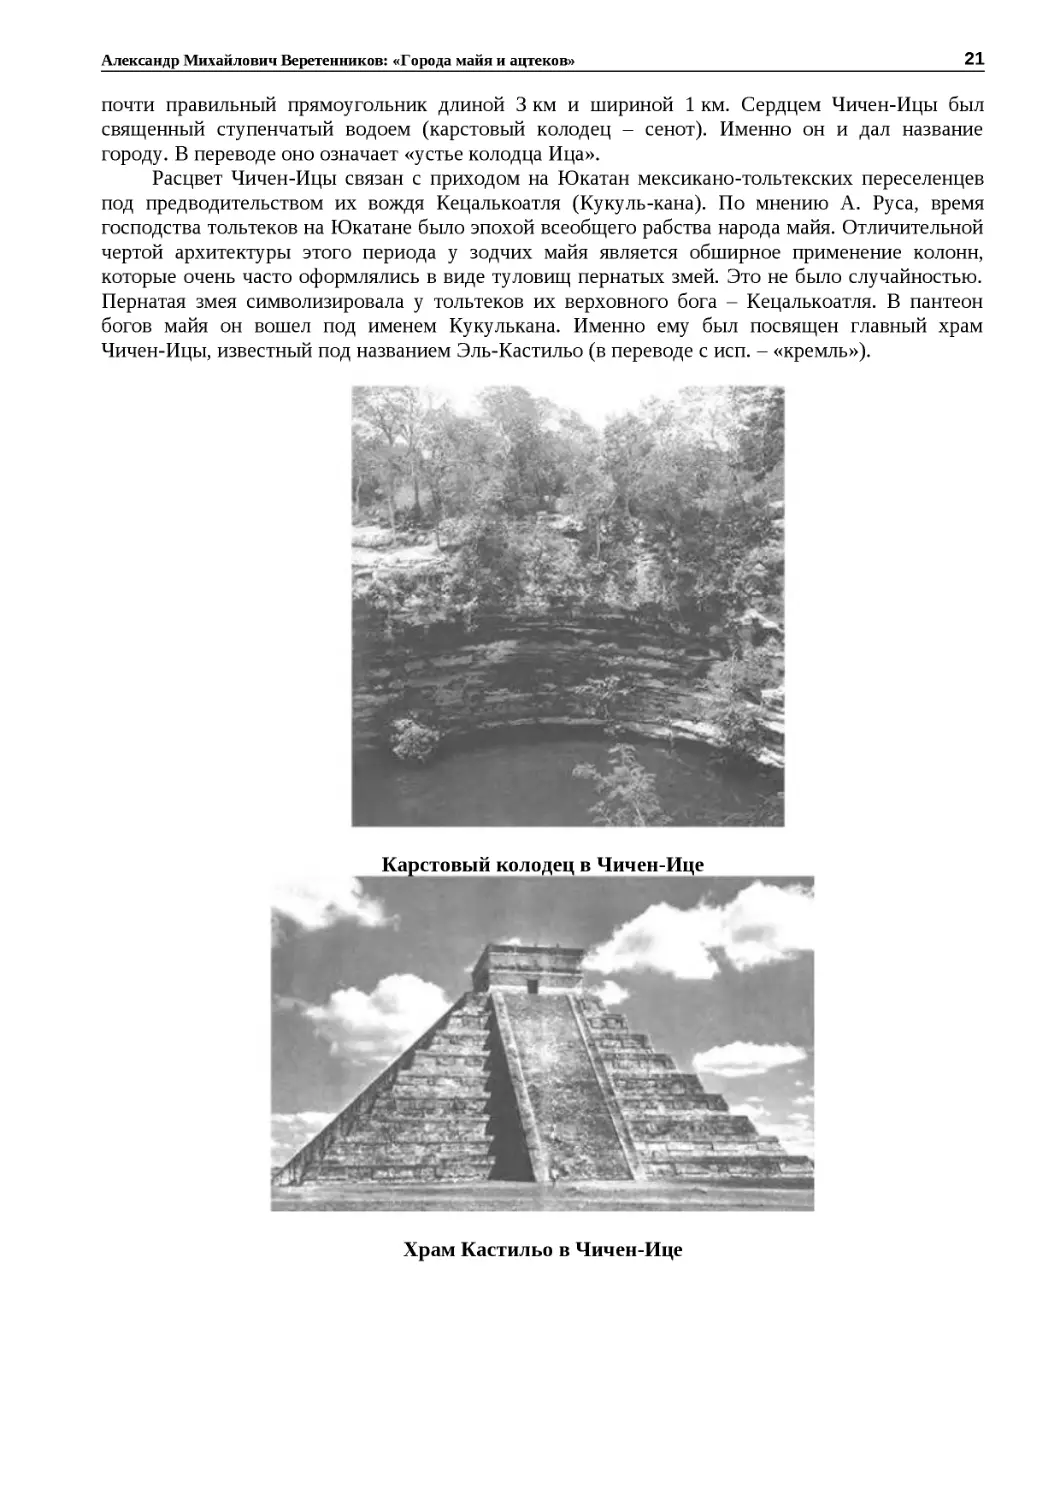 ﻿Карстовый колодец в Чичен‑Иц
"
﻿Храм Кастильо в Чичен‑Иц